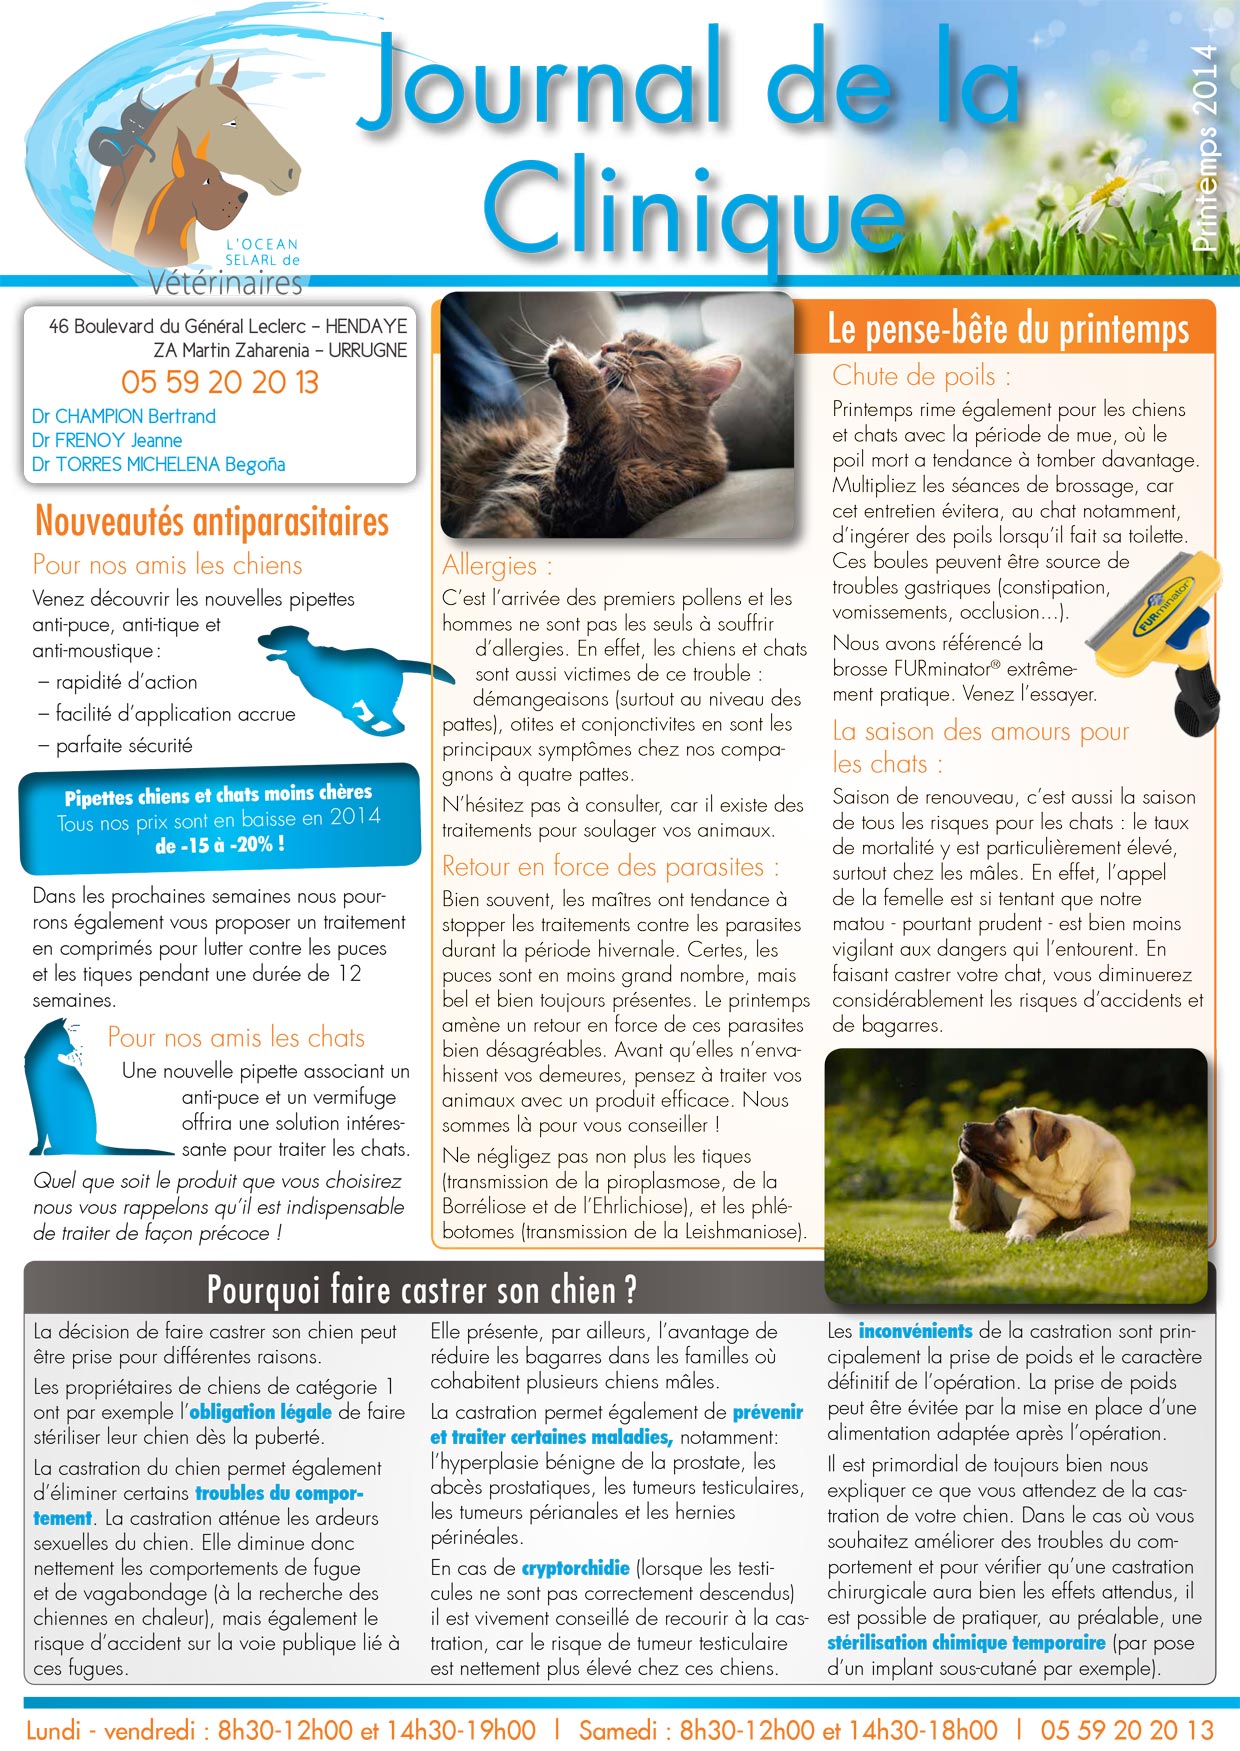 Le Journal de la Clinique - Printemps 2014 page 1